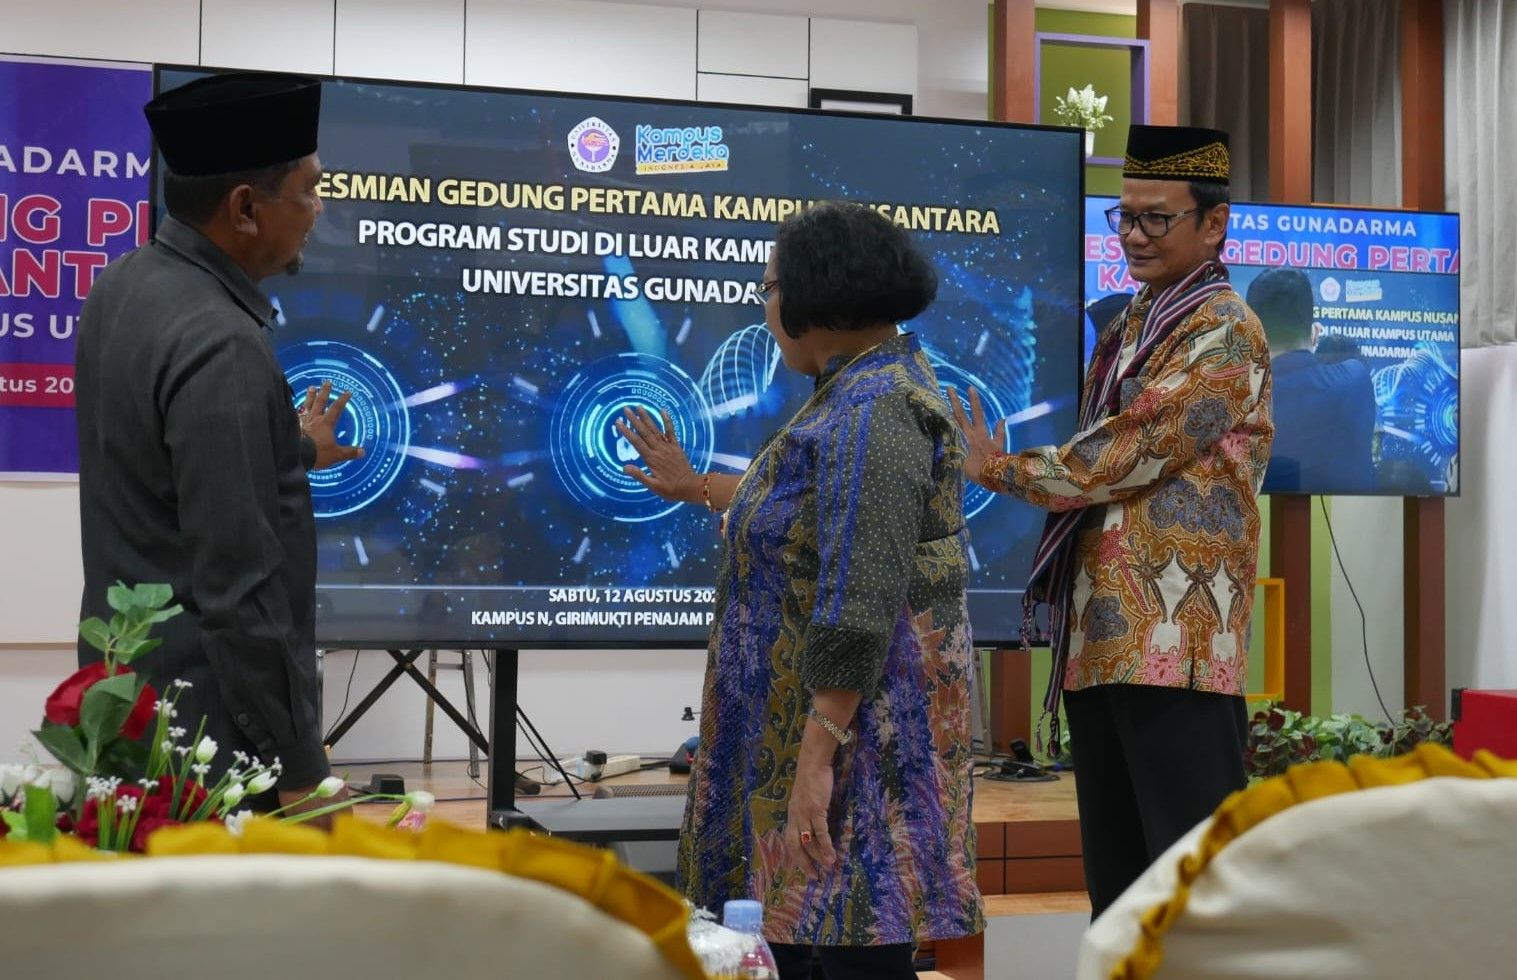 Gedung Pertama Kampus Nusantara PSDKU Universitas Gunadarma Diresmikan